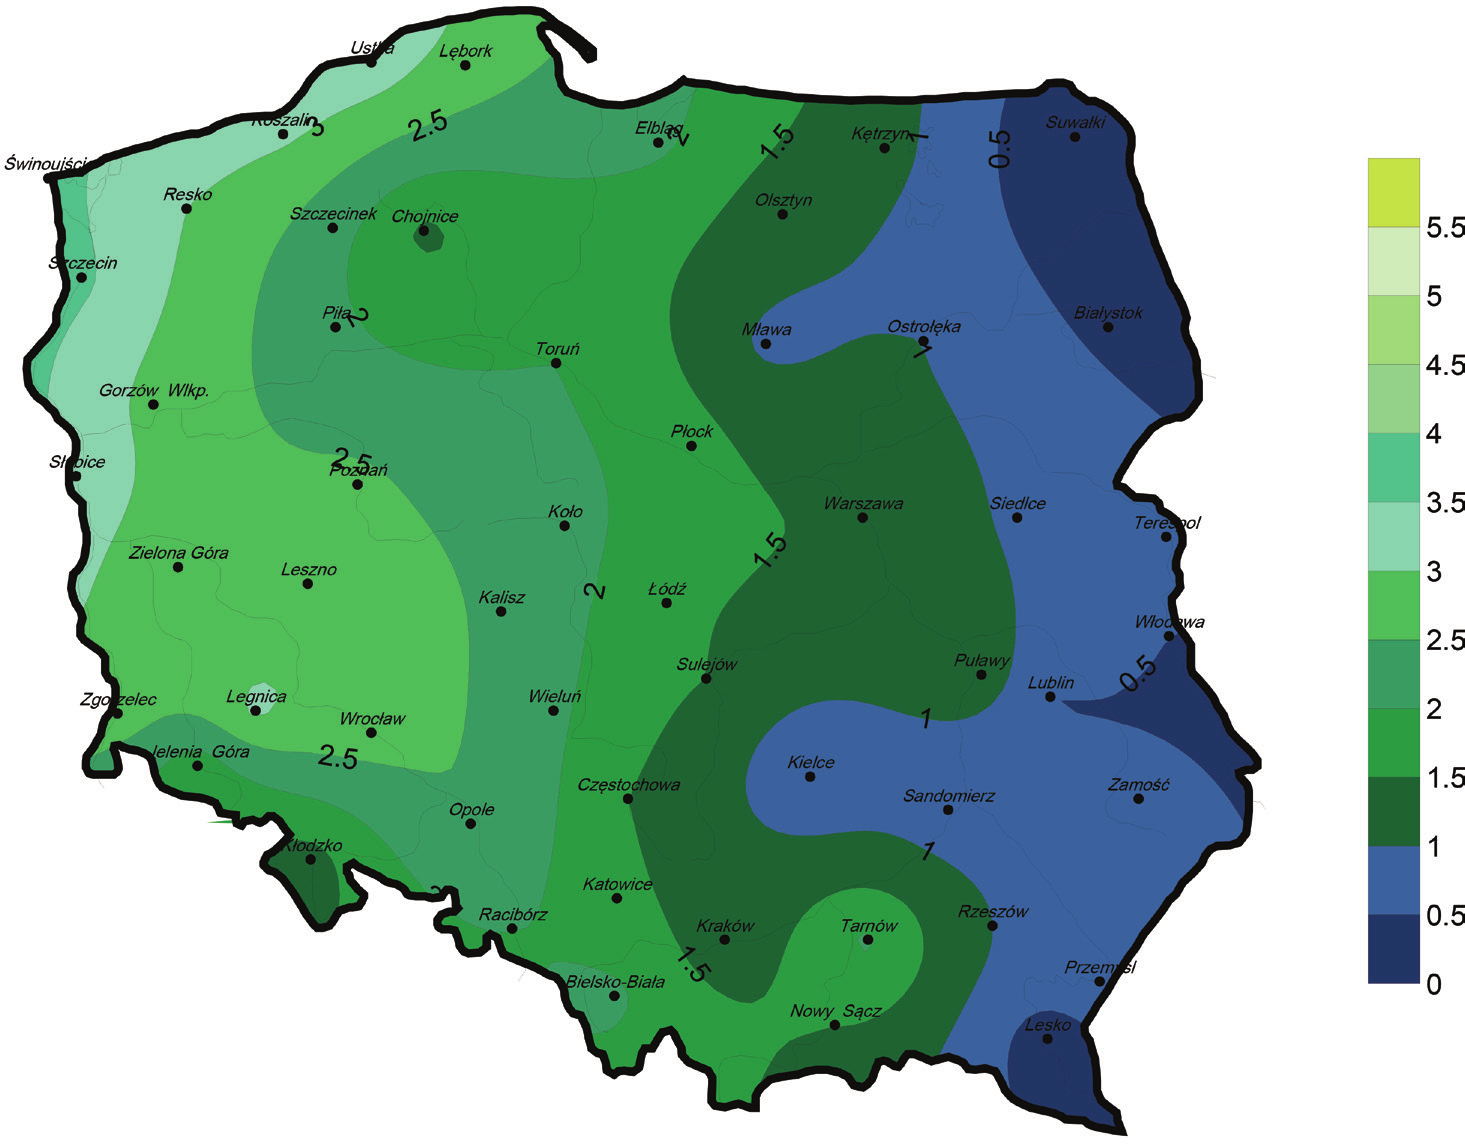 Agnieszka Ziernicka-Wojtaszek, Zbigniew Zuśka w Suwałkach. W lutym ujemne temperatury wystąpiły na 12 stacjach z najniższą wartością 1,7ºC również w Suwałkach. Źródło: opracowanie własne Rysunek 1.